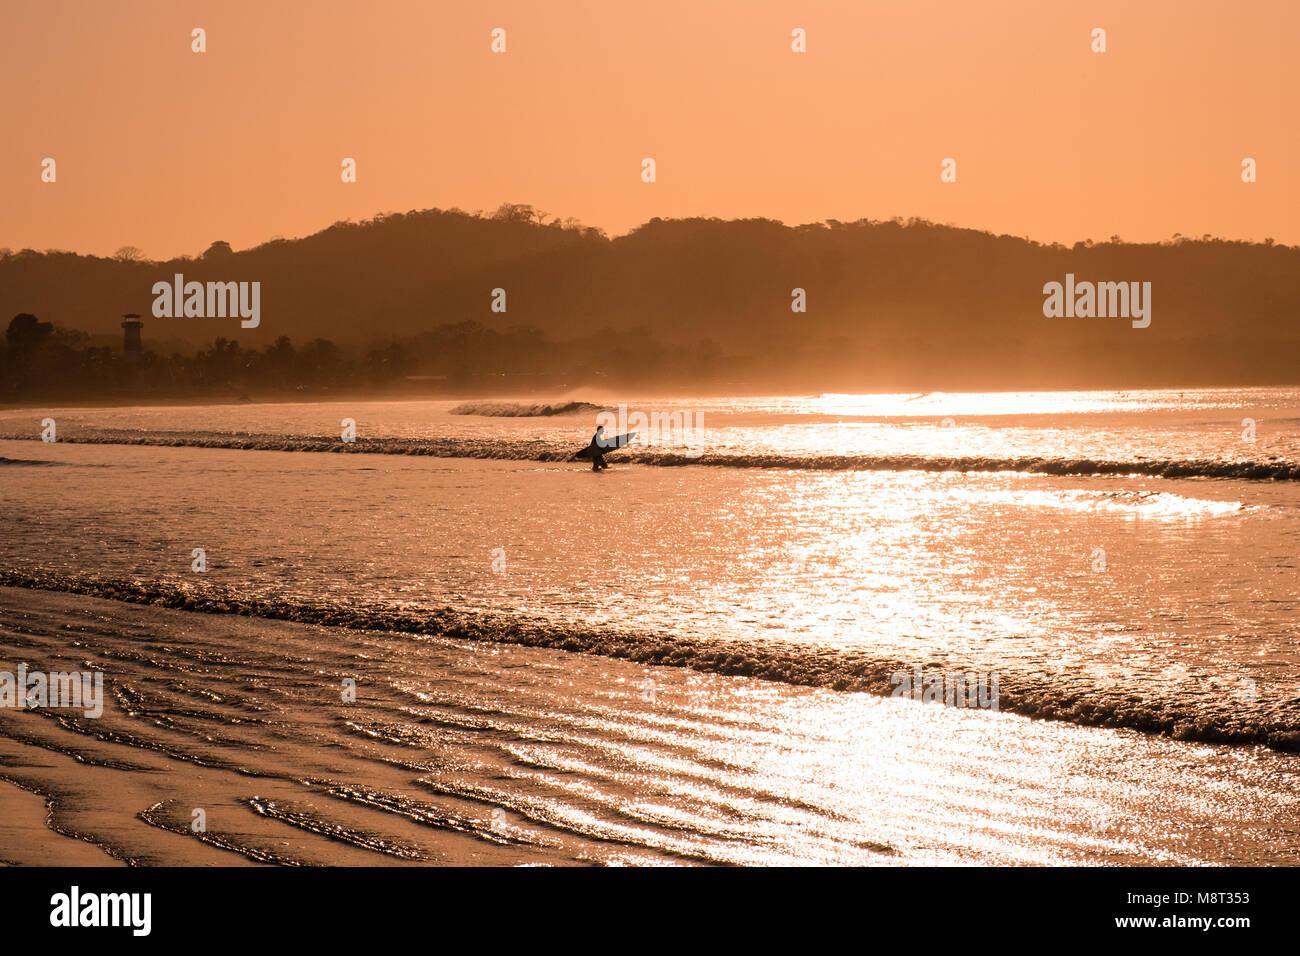 Surfer va dans ocean - silhouette de personne avec une planche de surf à la plage pendant le coucher du soleil - Banque D'Images